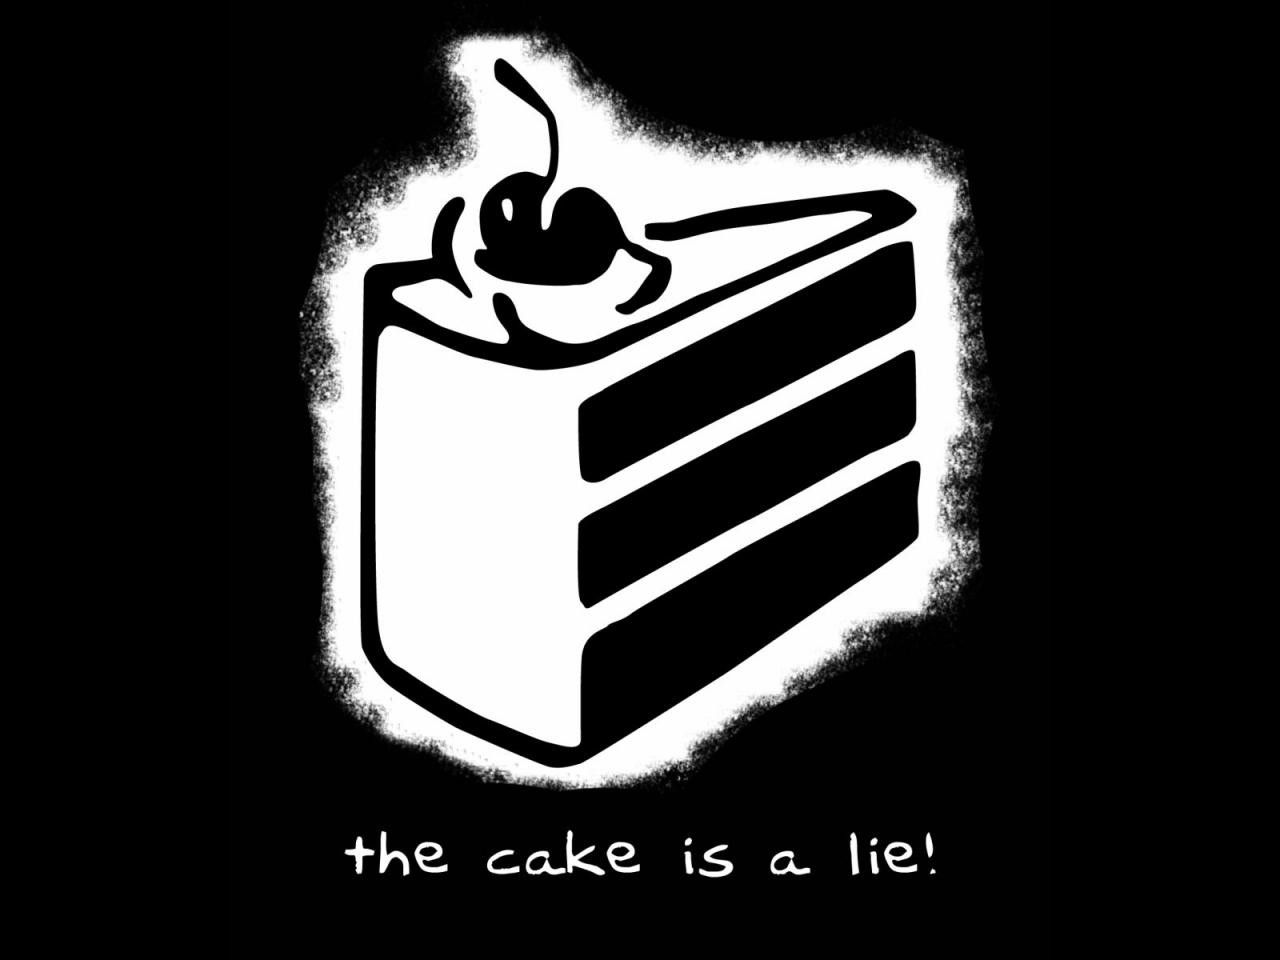 The cake is a lie. Lie, High resolution wallpaper, Xiaomi wallpaper